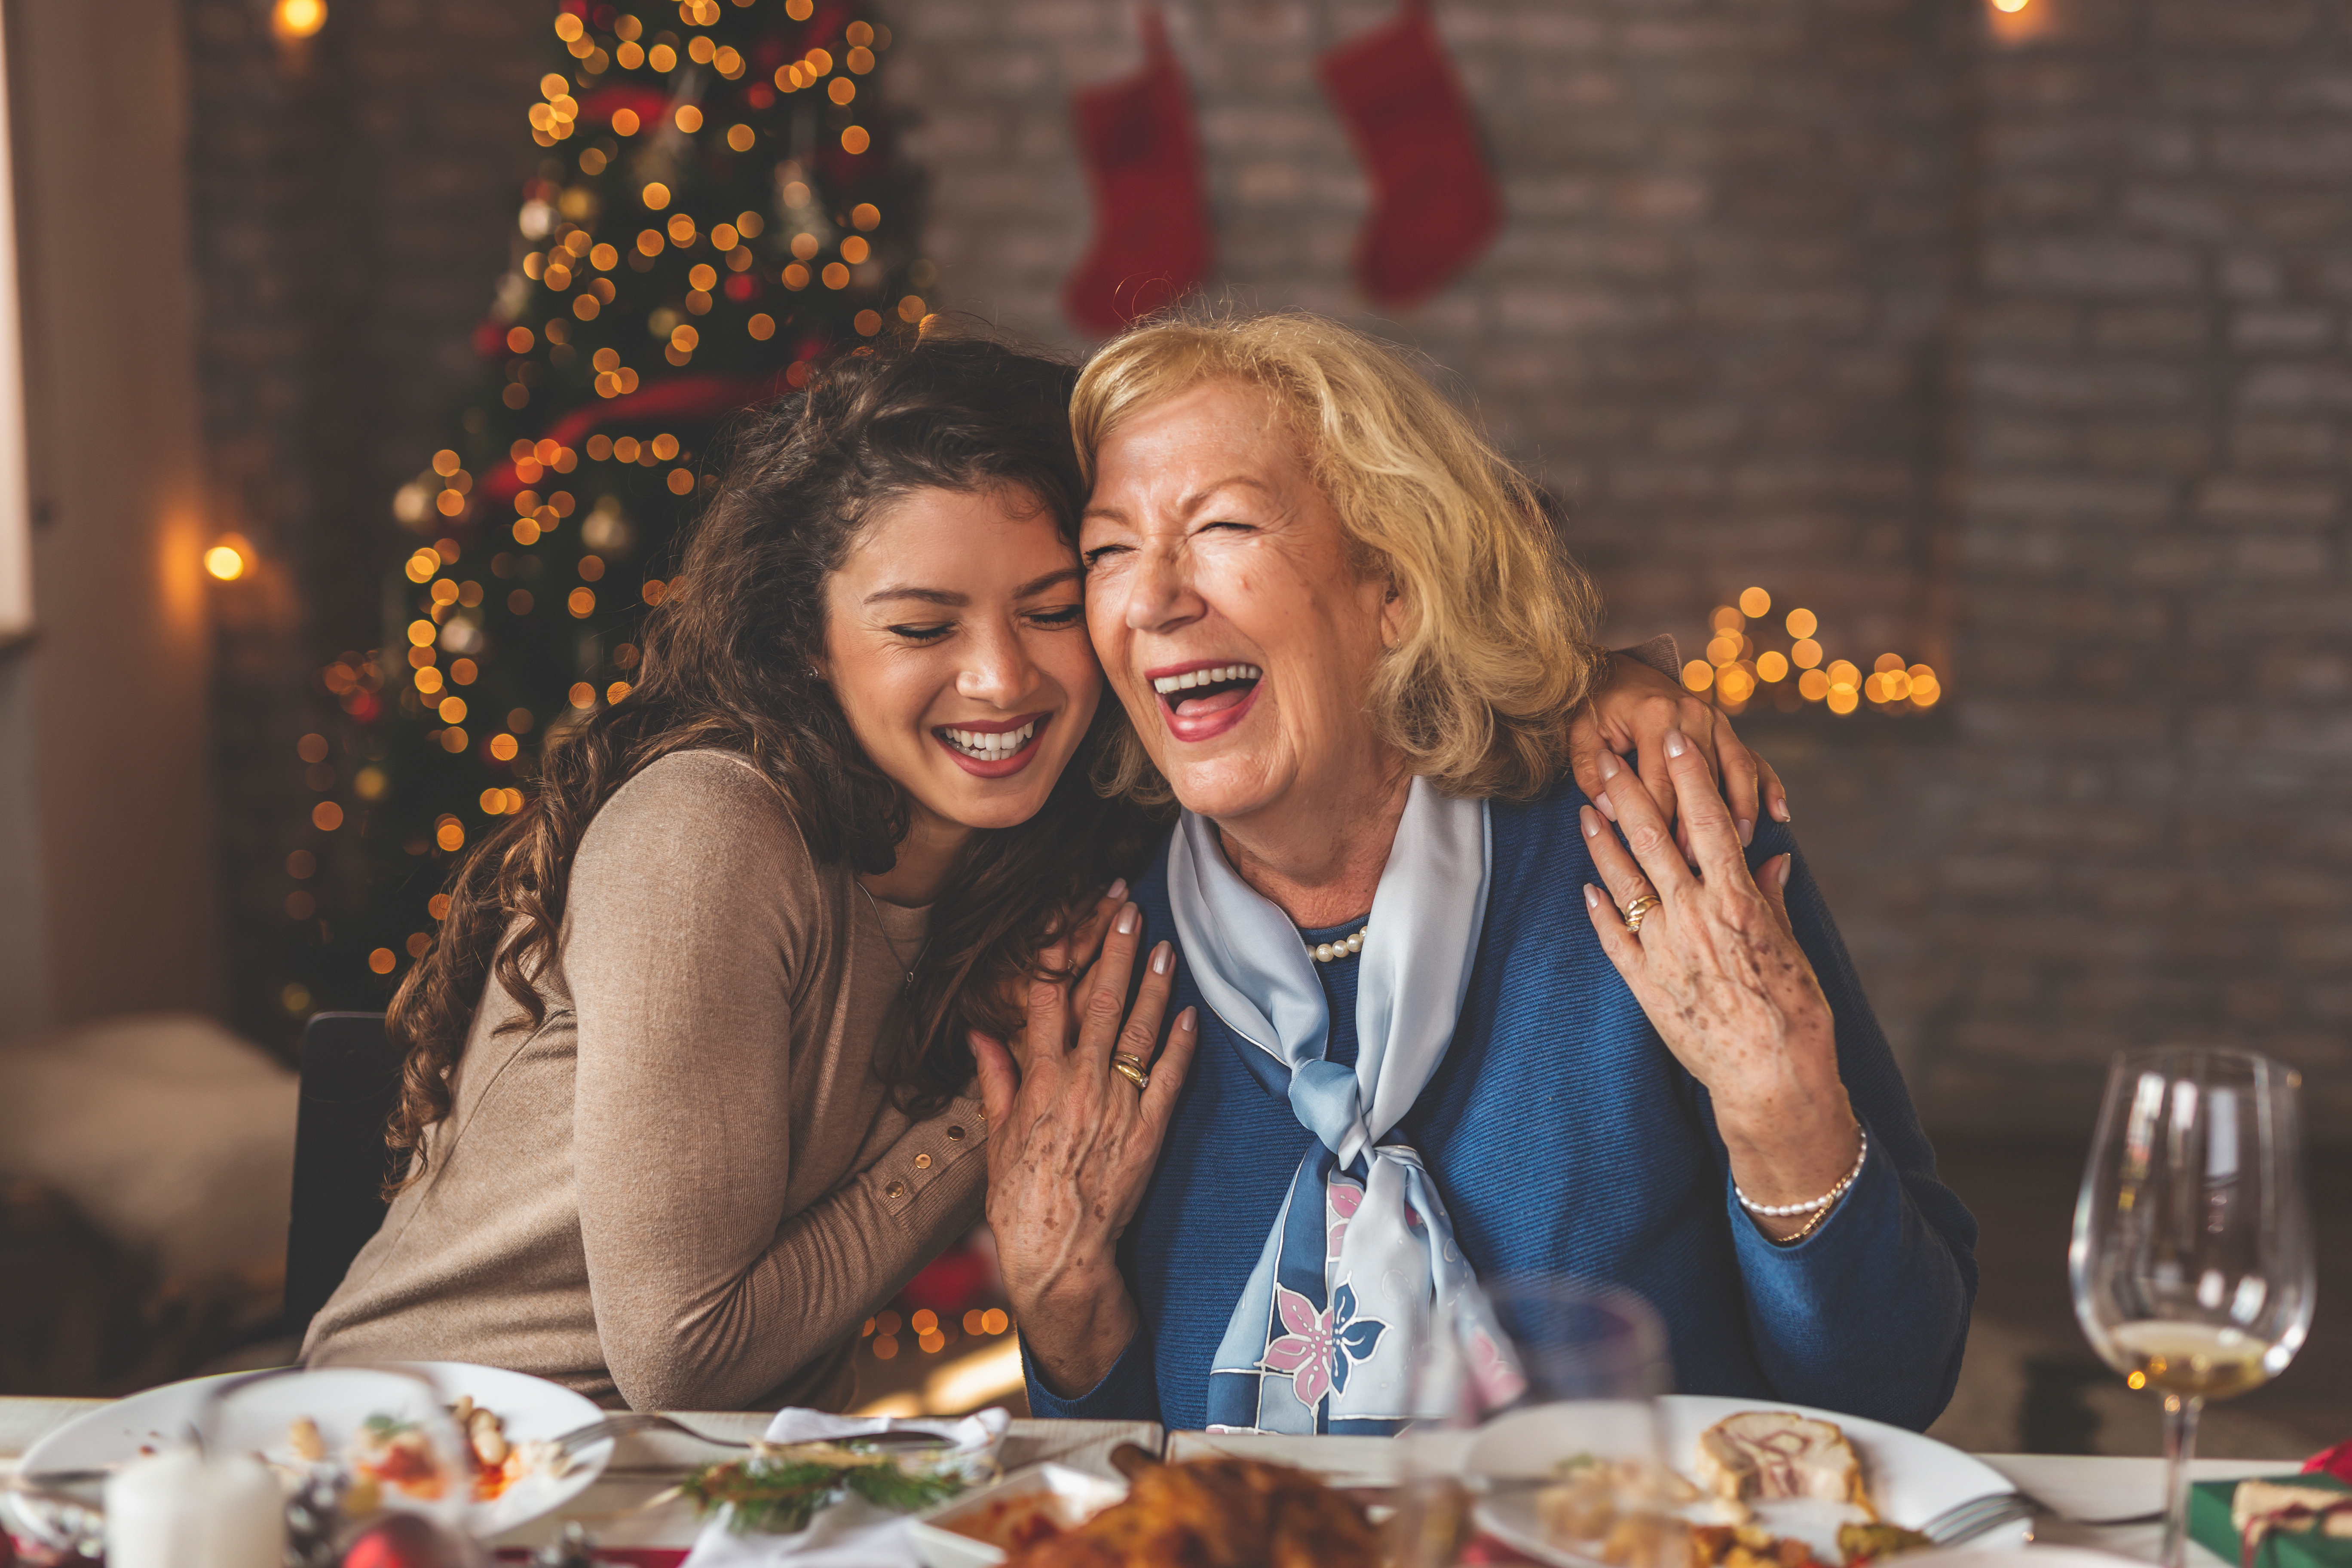 Joven abrazando a su madre en Navidad | Foto: Shutterstock